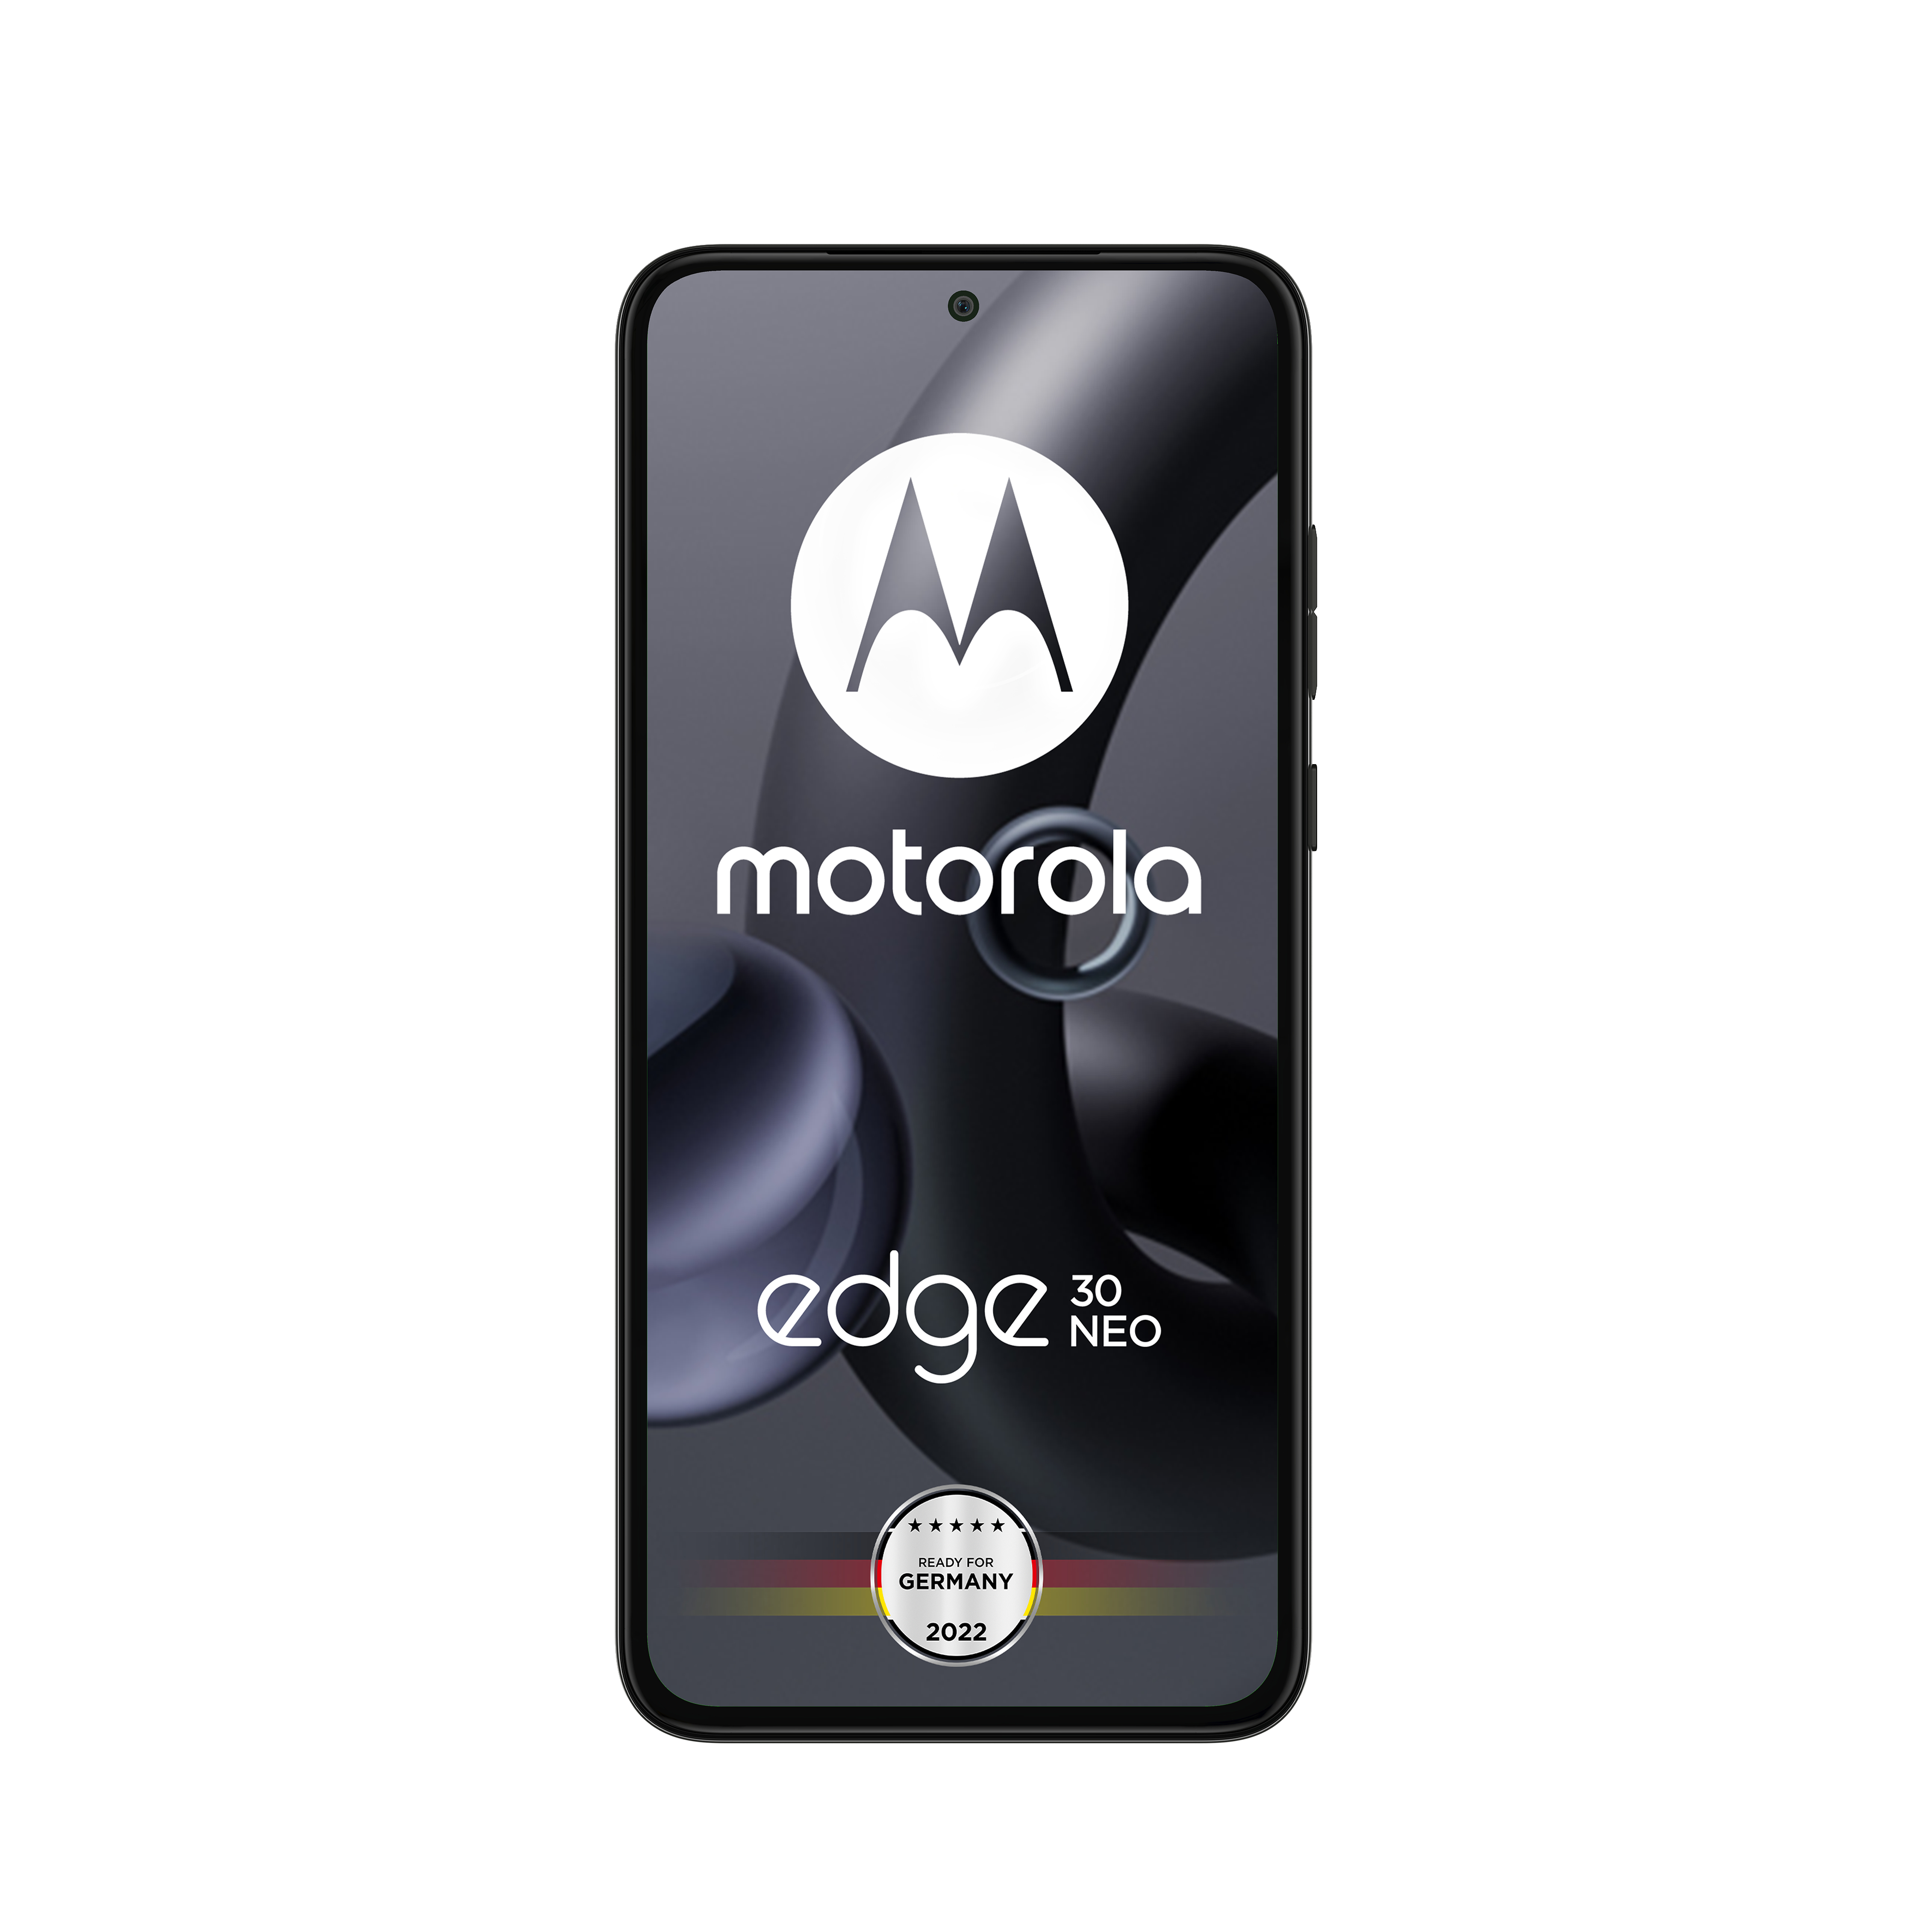 Dual SIM Onyx MOTOROLA GB Neo Black Edge 30 128